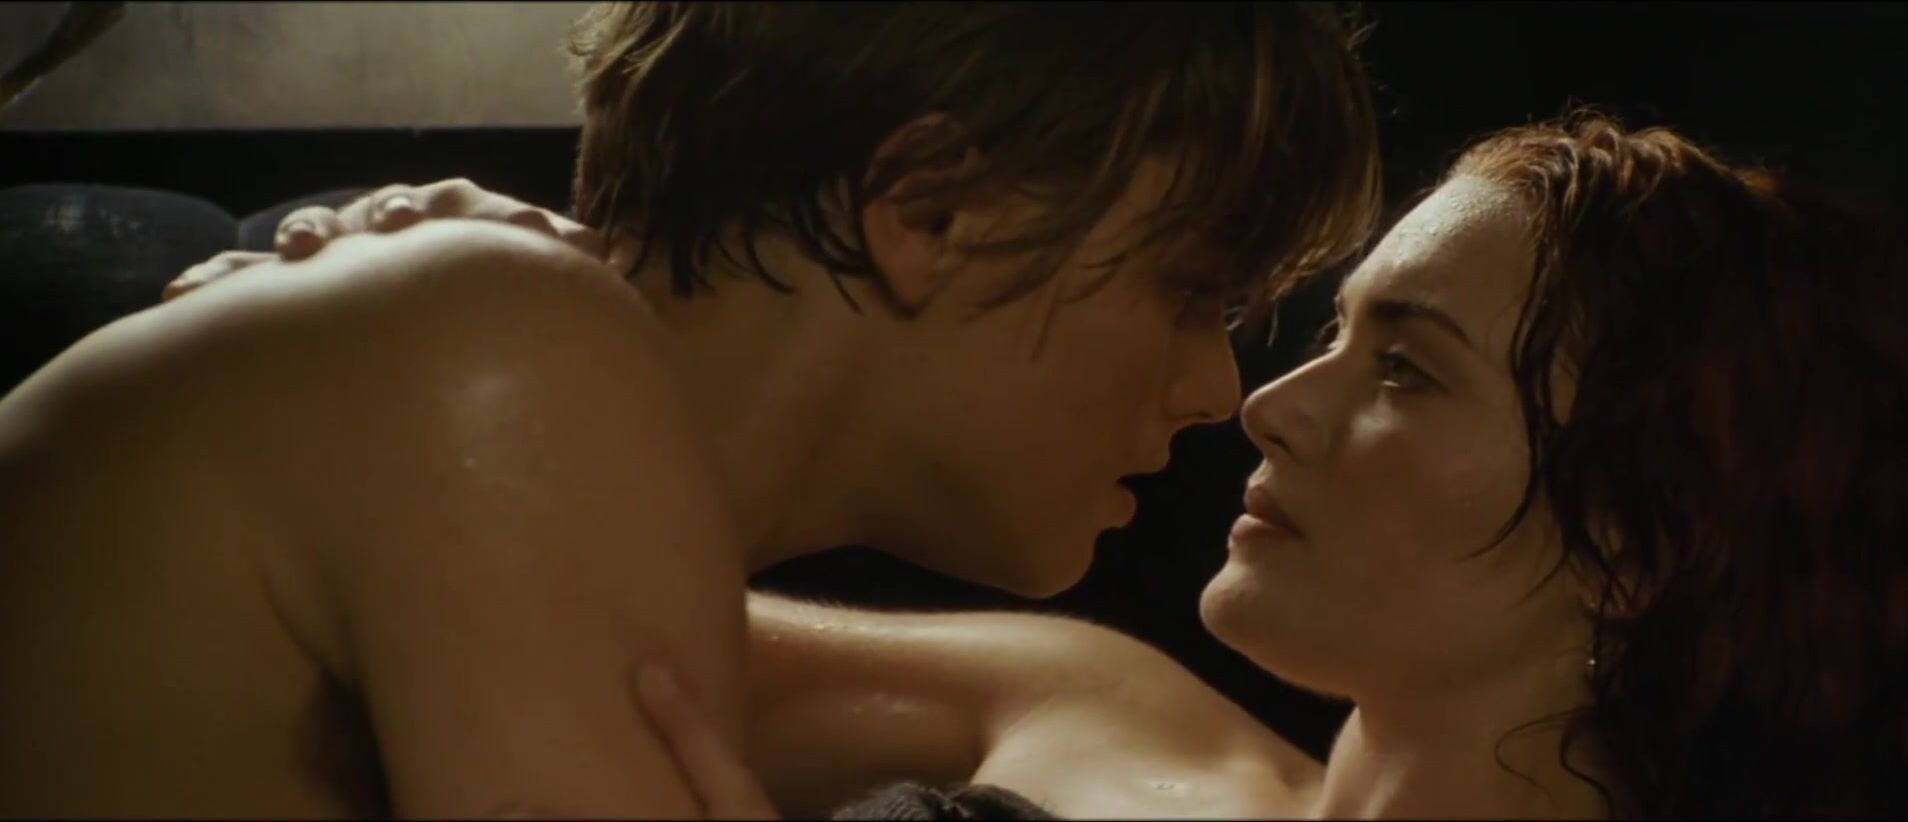 Gozando Leonardo DiCaprio loves chick's body and draws her before fucking in Titanic (1997) Indo